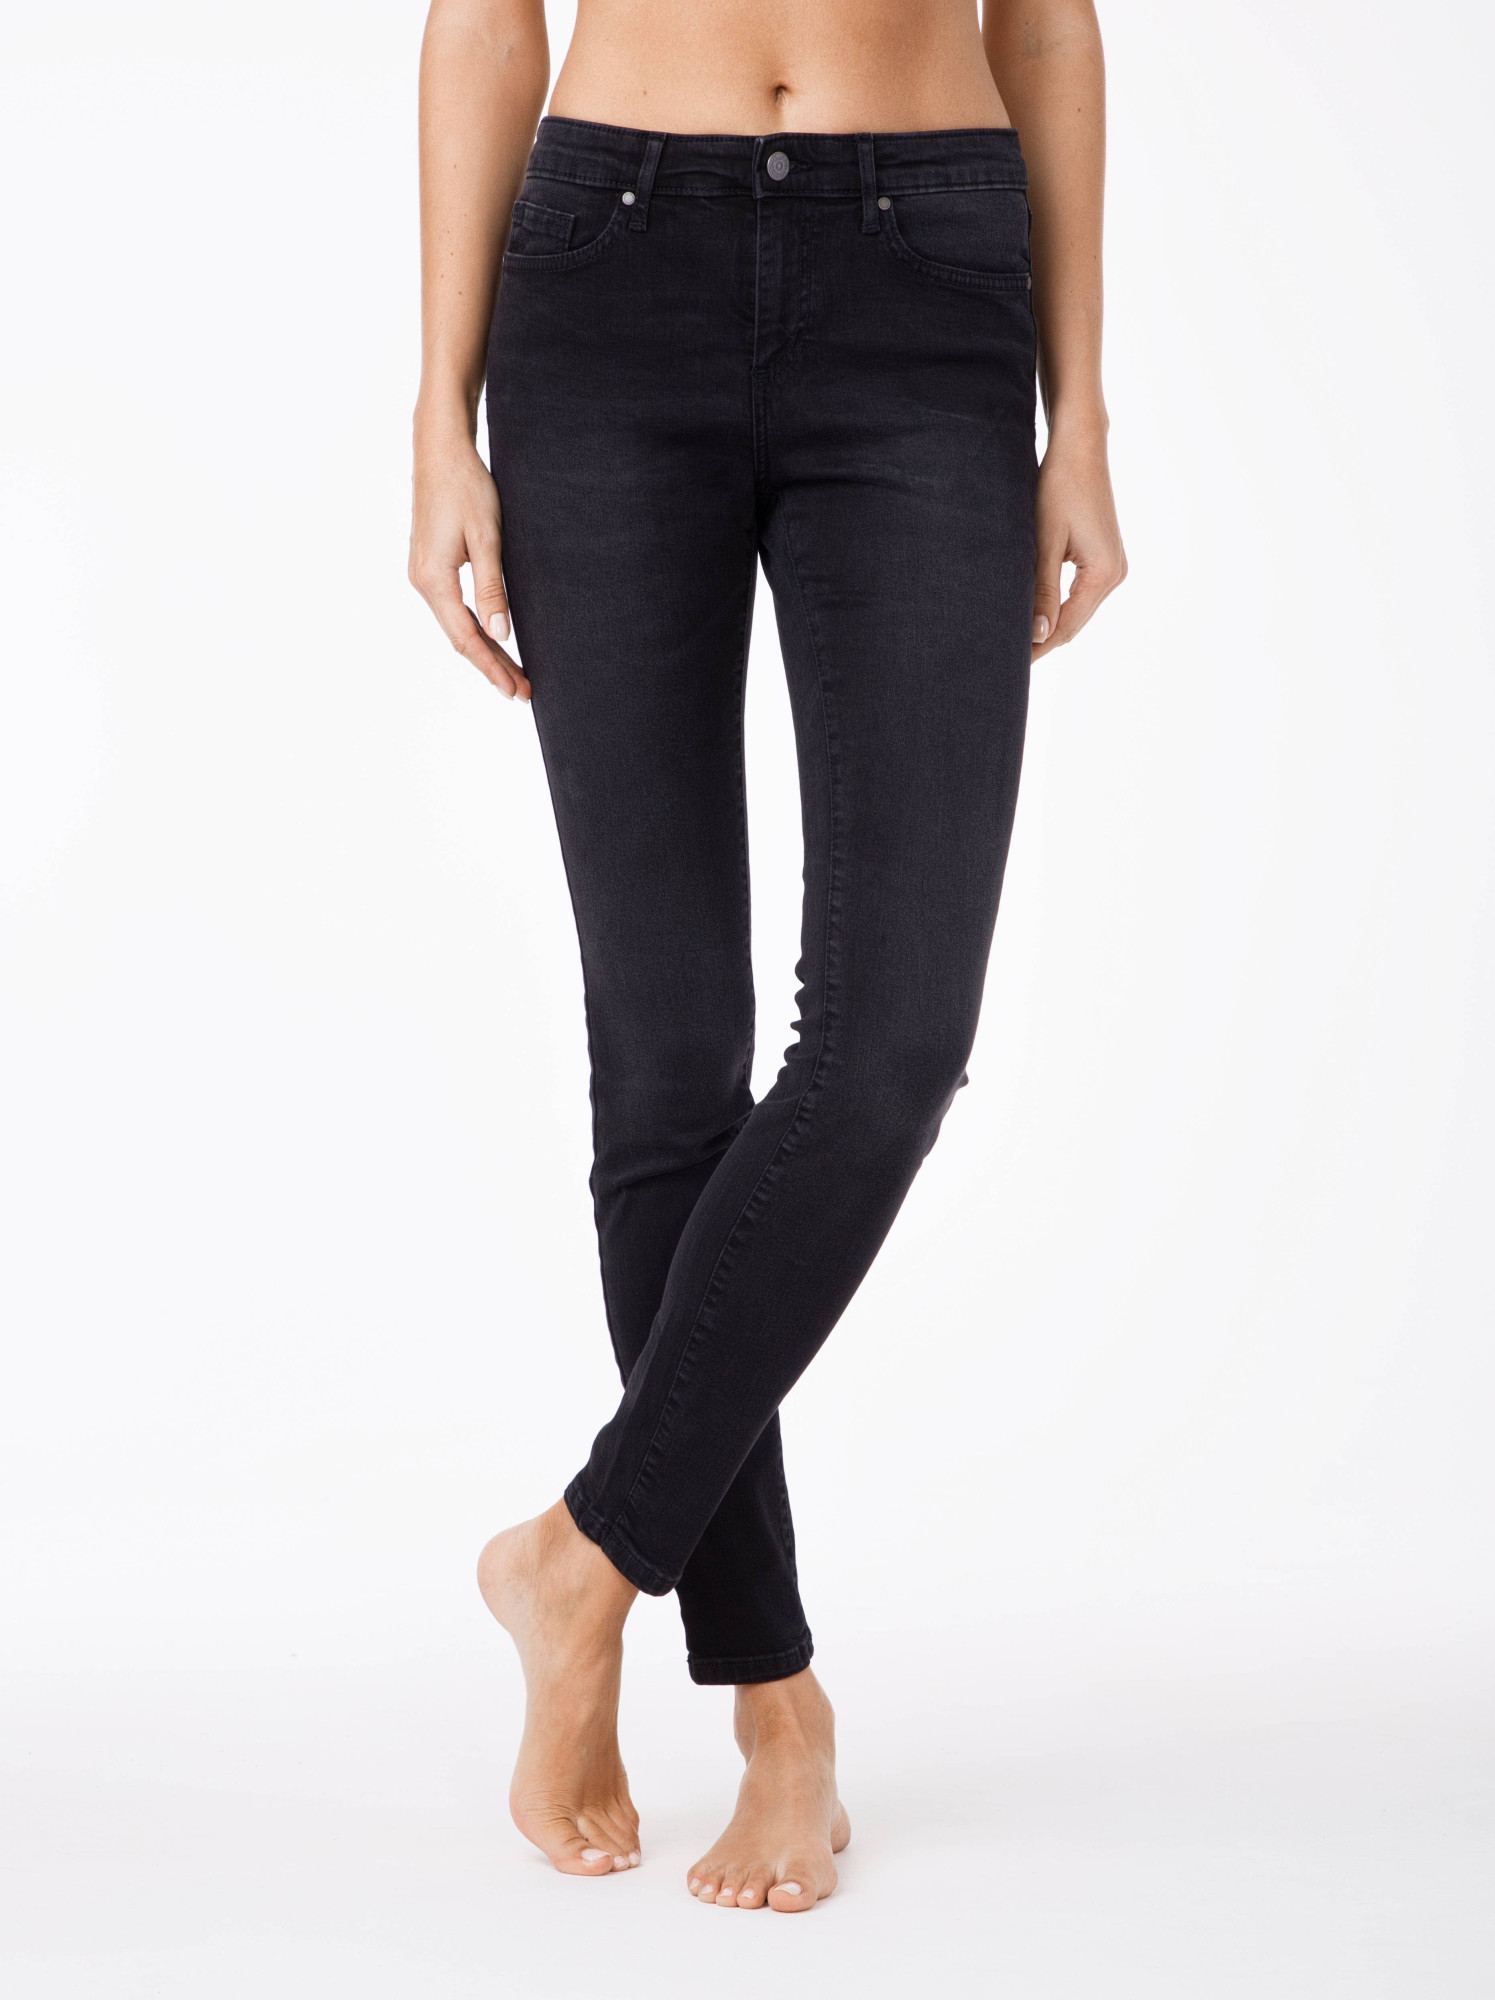 CONTE Jeans Black 170-102/L